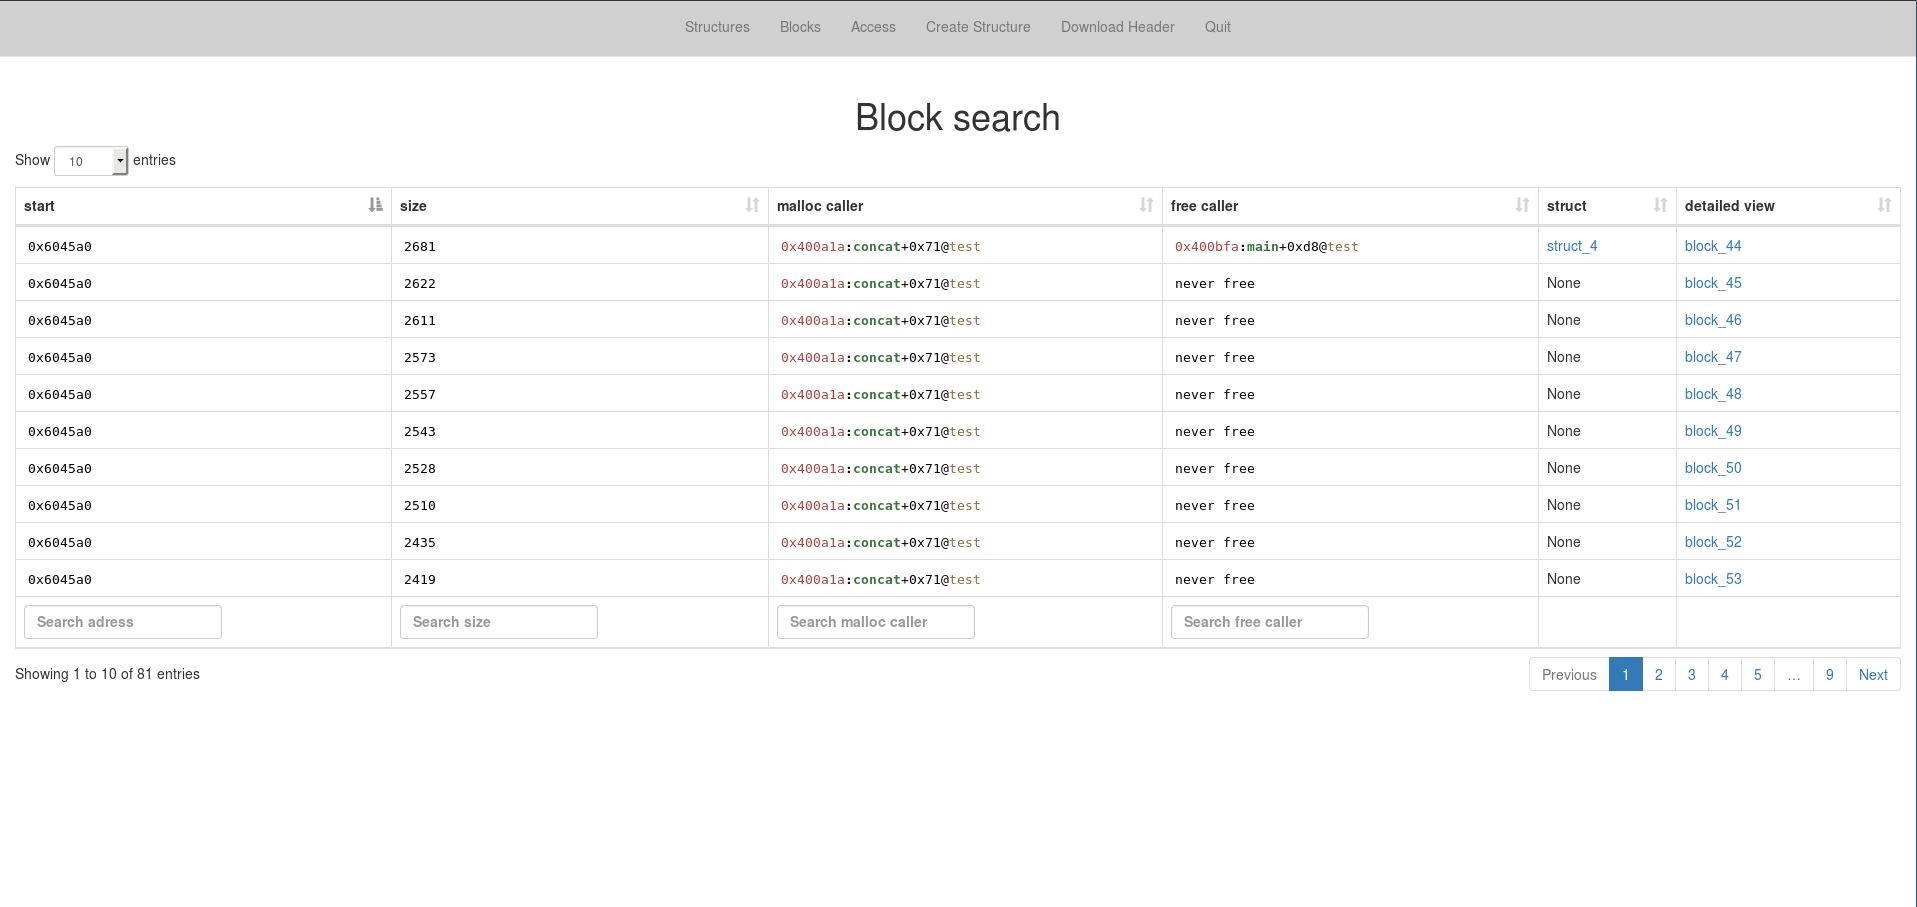 Block search view